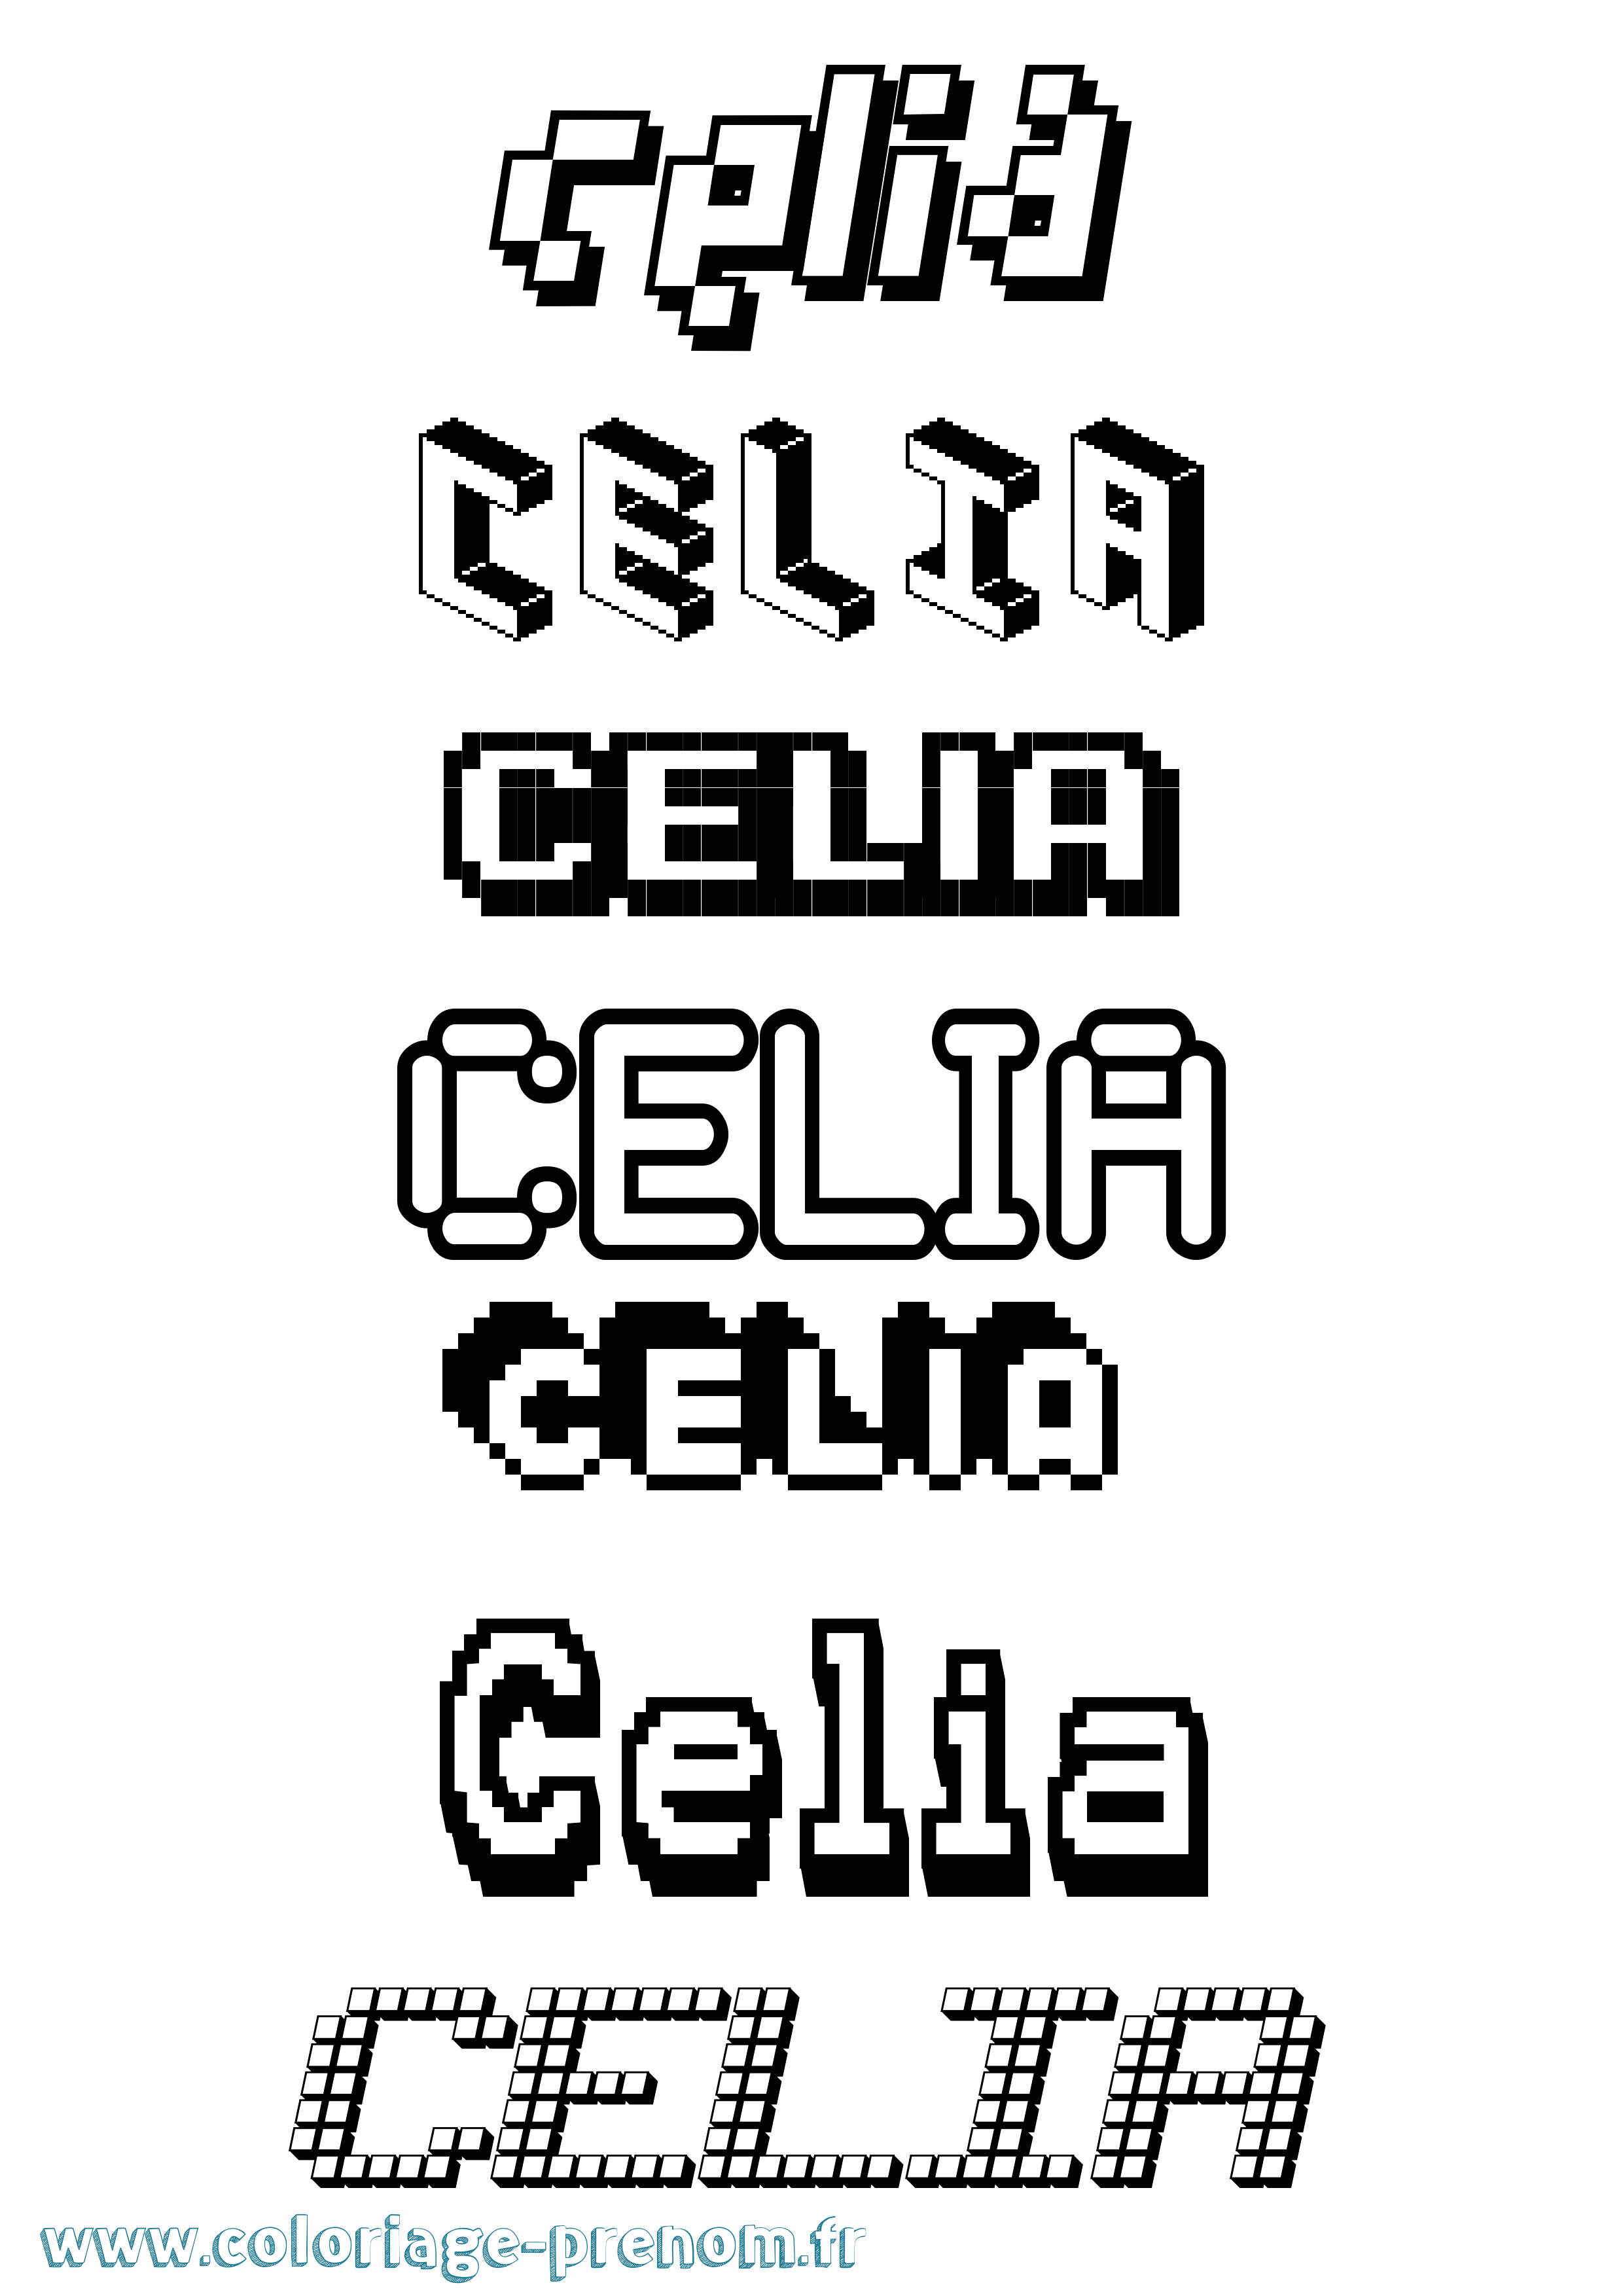 Coloriage prénom Celia Pixel